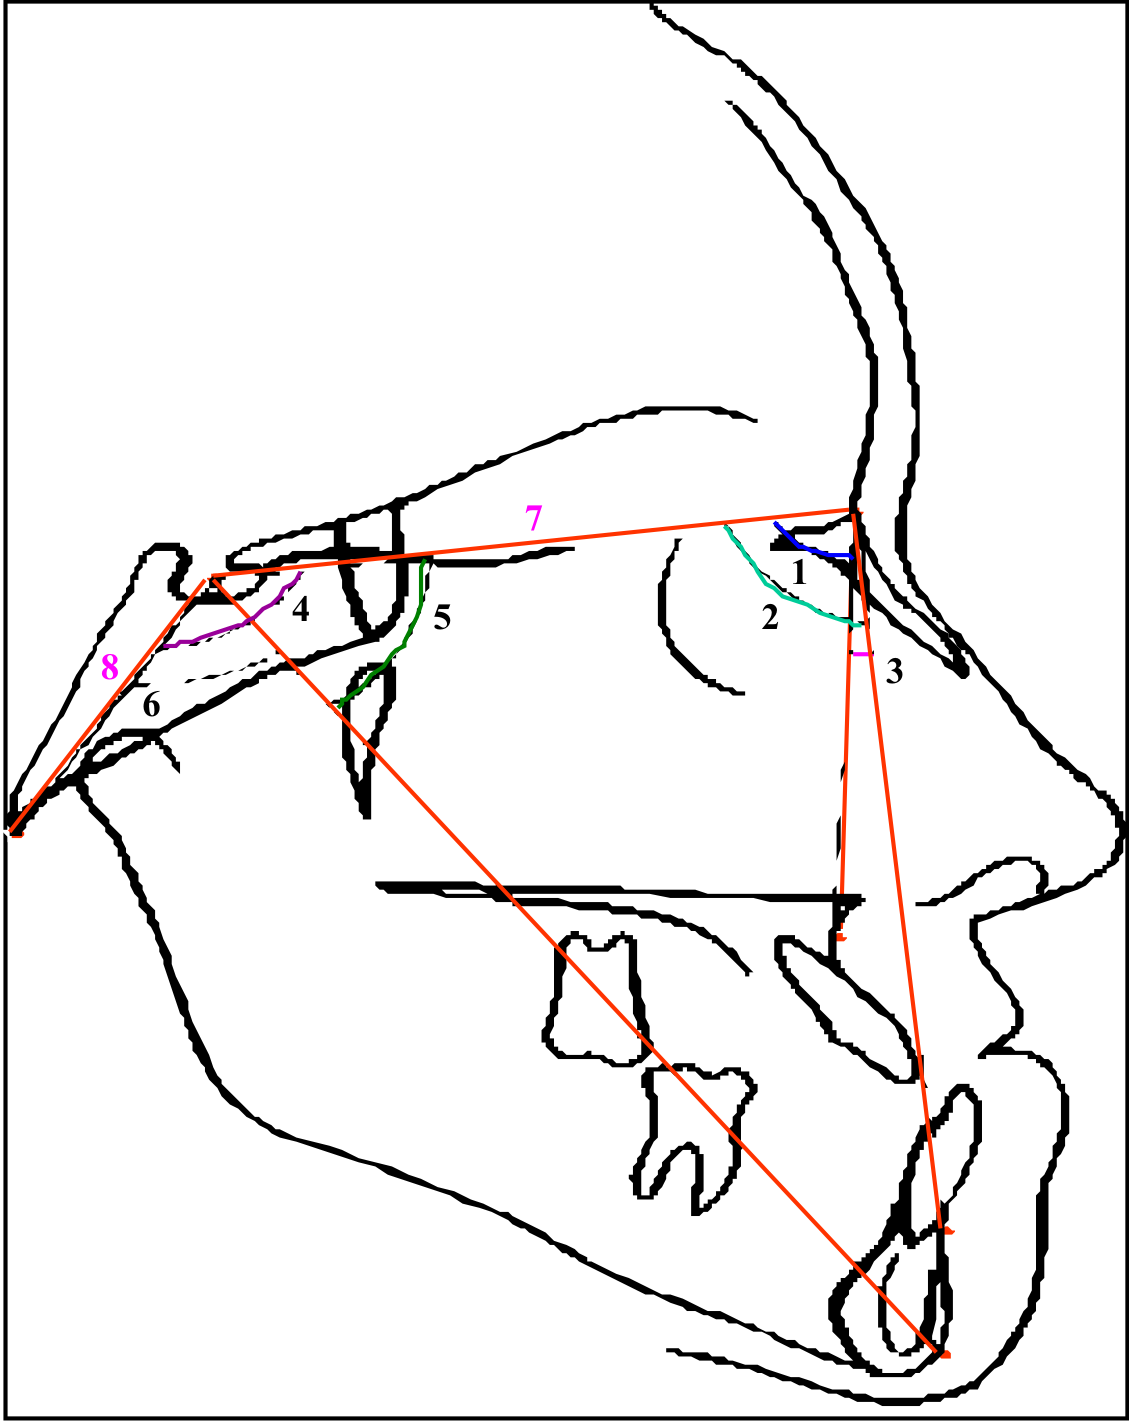 base do crânio: medidas lineares e angulares